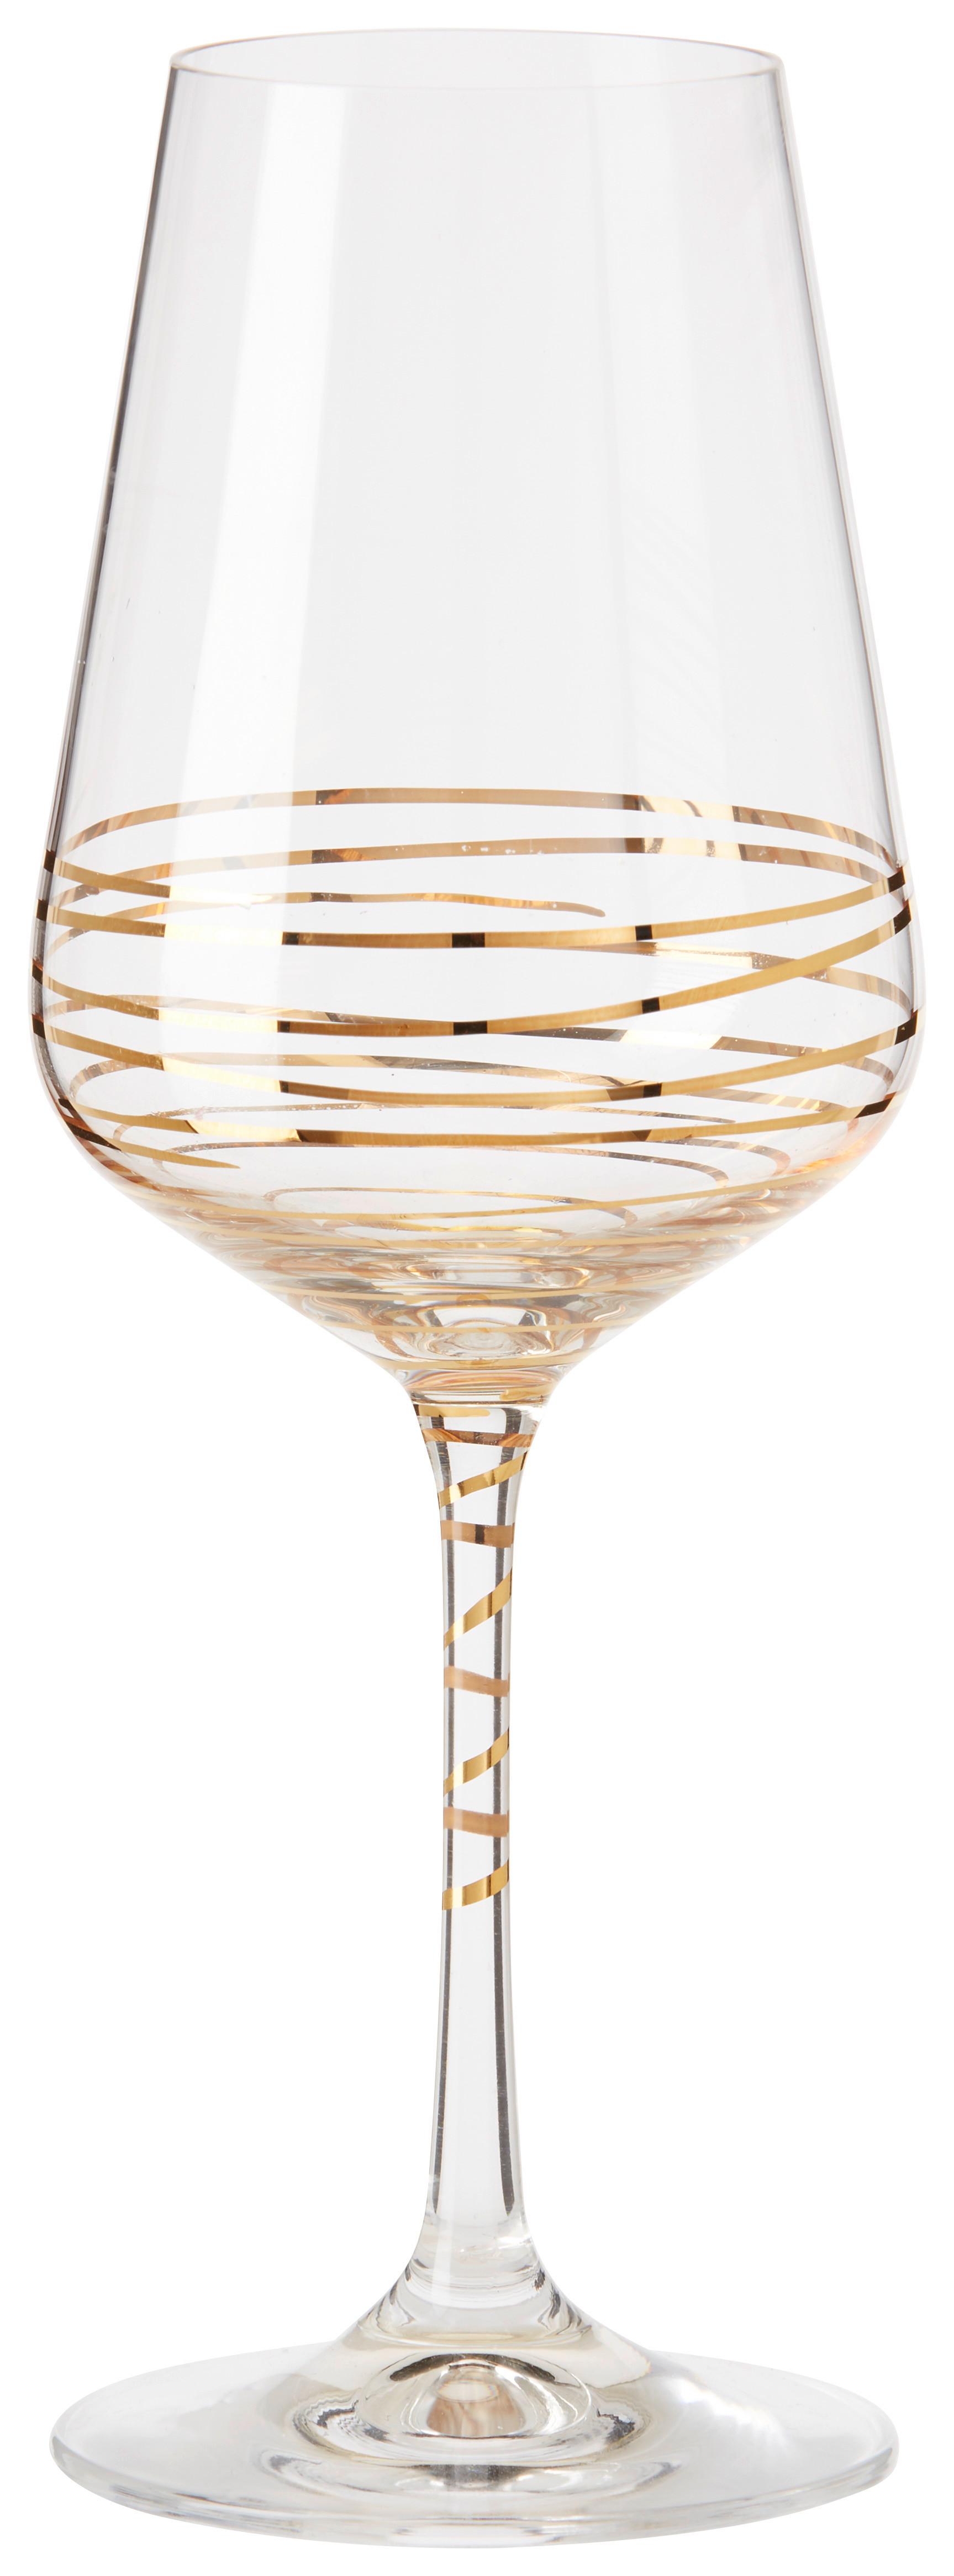 Weißweinglas Elegance ca. 350ml - Klar/Goldfarben, MODERN, Glas (0,35l) - Bohemia